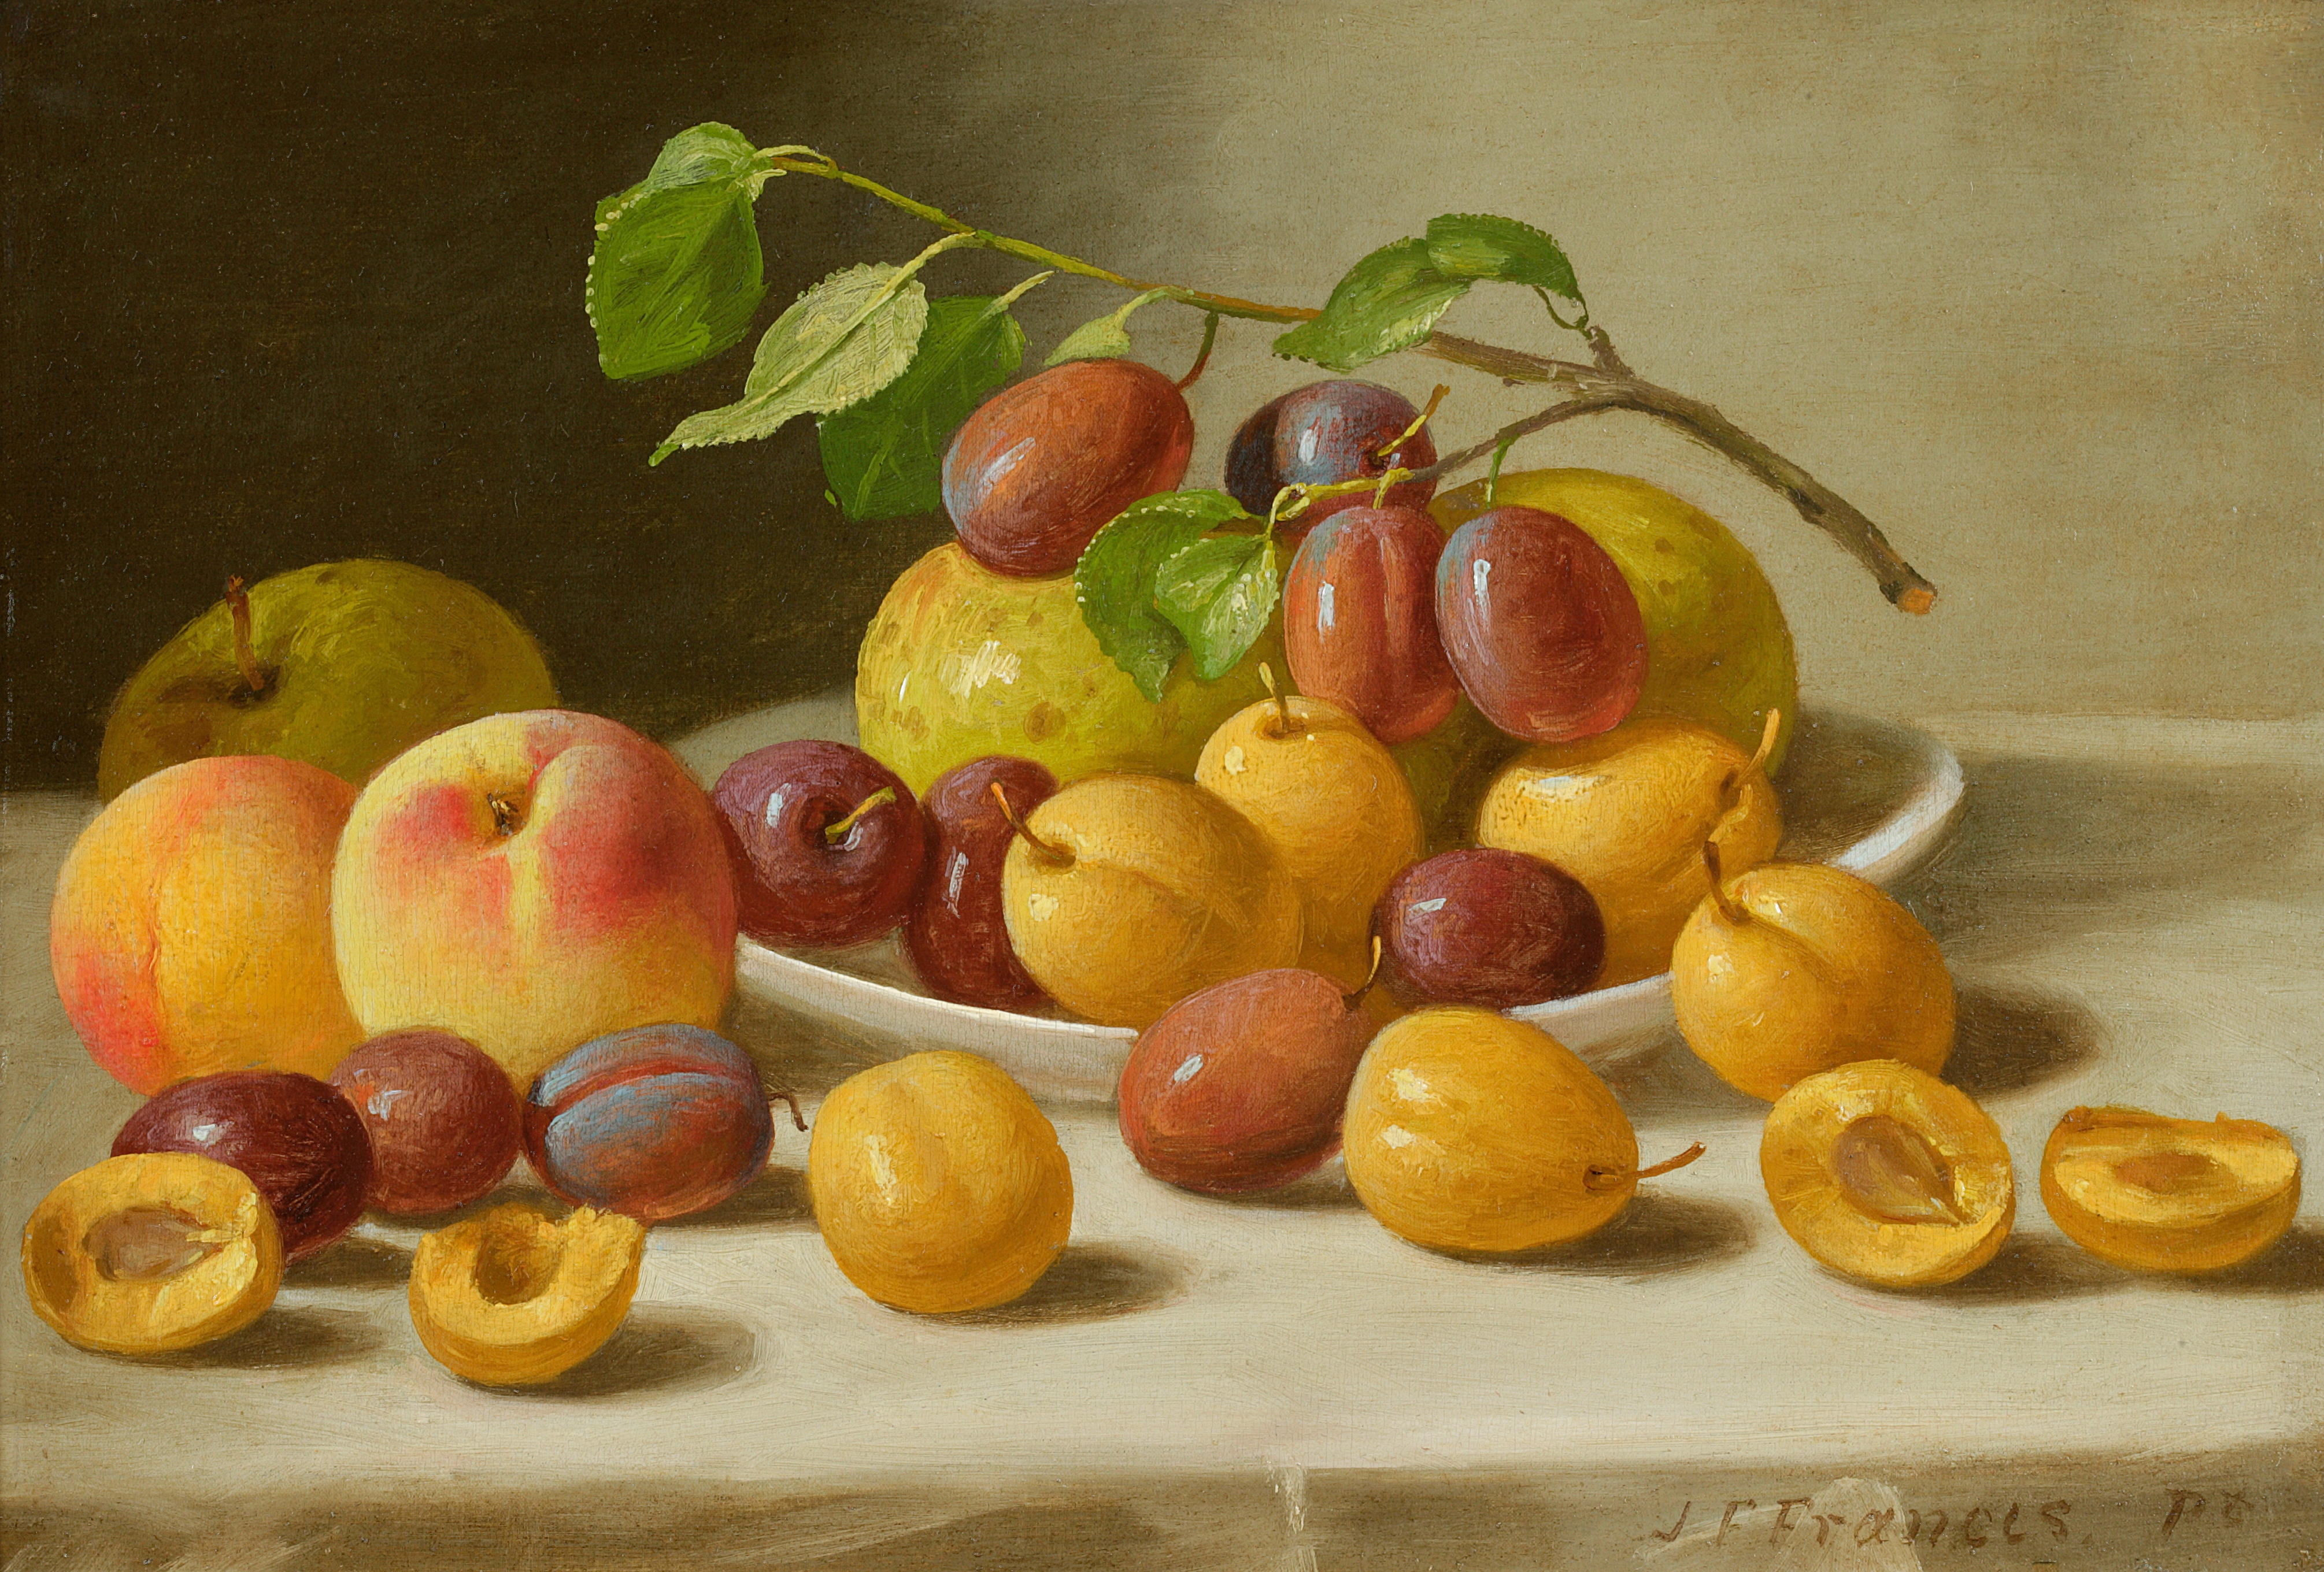 2 11 всех фруктов составляют персики. Американский художник Джон Францис. Джон Фрэнсис 1808-1886. Натюрморт Джон ф. Фрэнсис. Художник Джордж Форстер.